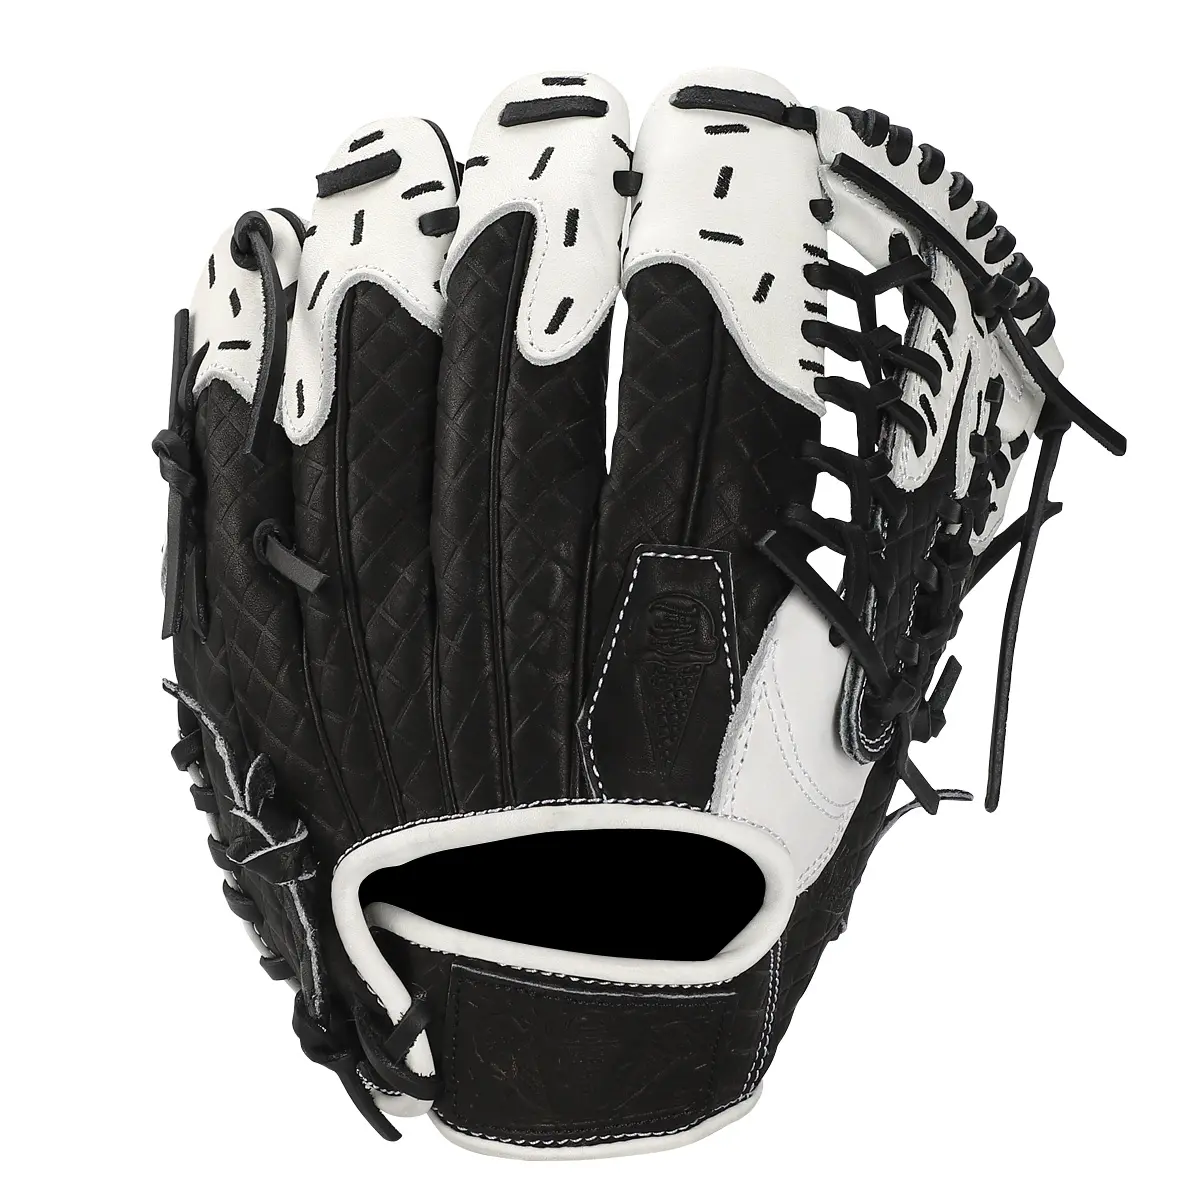 Supporte les gants de softball logo11.5 pouces personnalisés